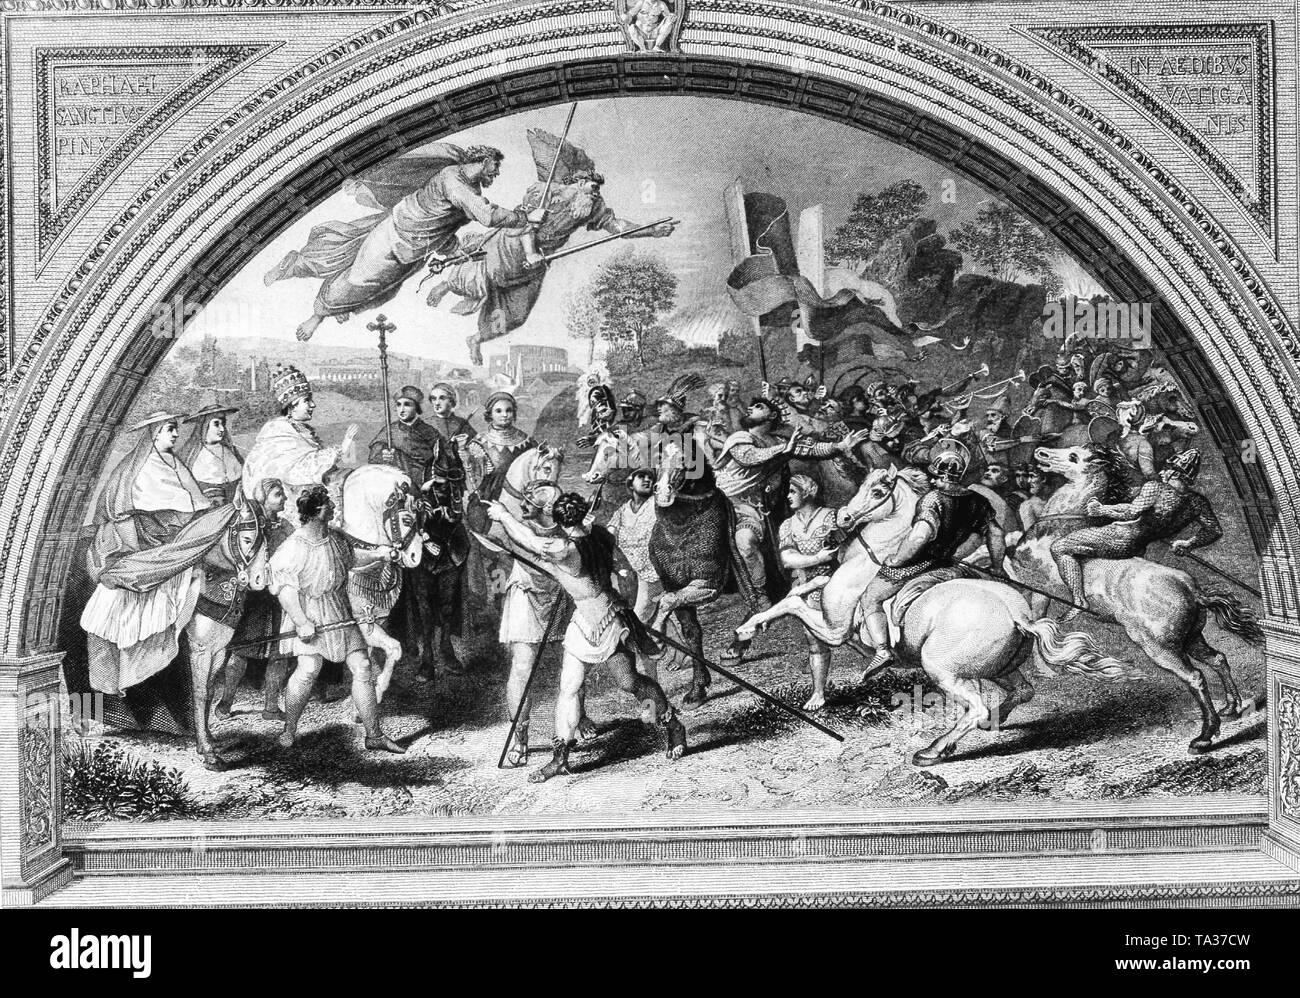 La réunion de Léon le Grand et Attila peinture de Raphaël au Musée du Vatican à Rome représente l'étagé palabre entre le pape et le Hun conquérant, et inclut les images légendaires de Saint Pierre et Saint Paul dans le ciel portant épées Banque D'Images